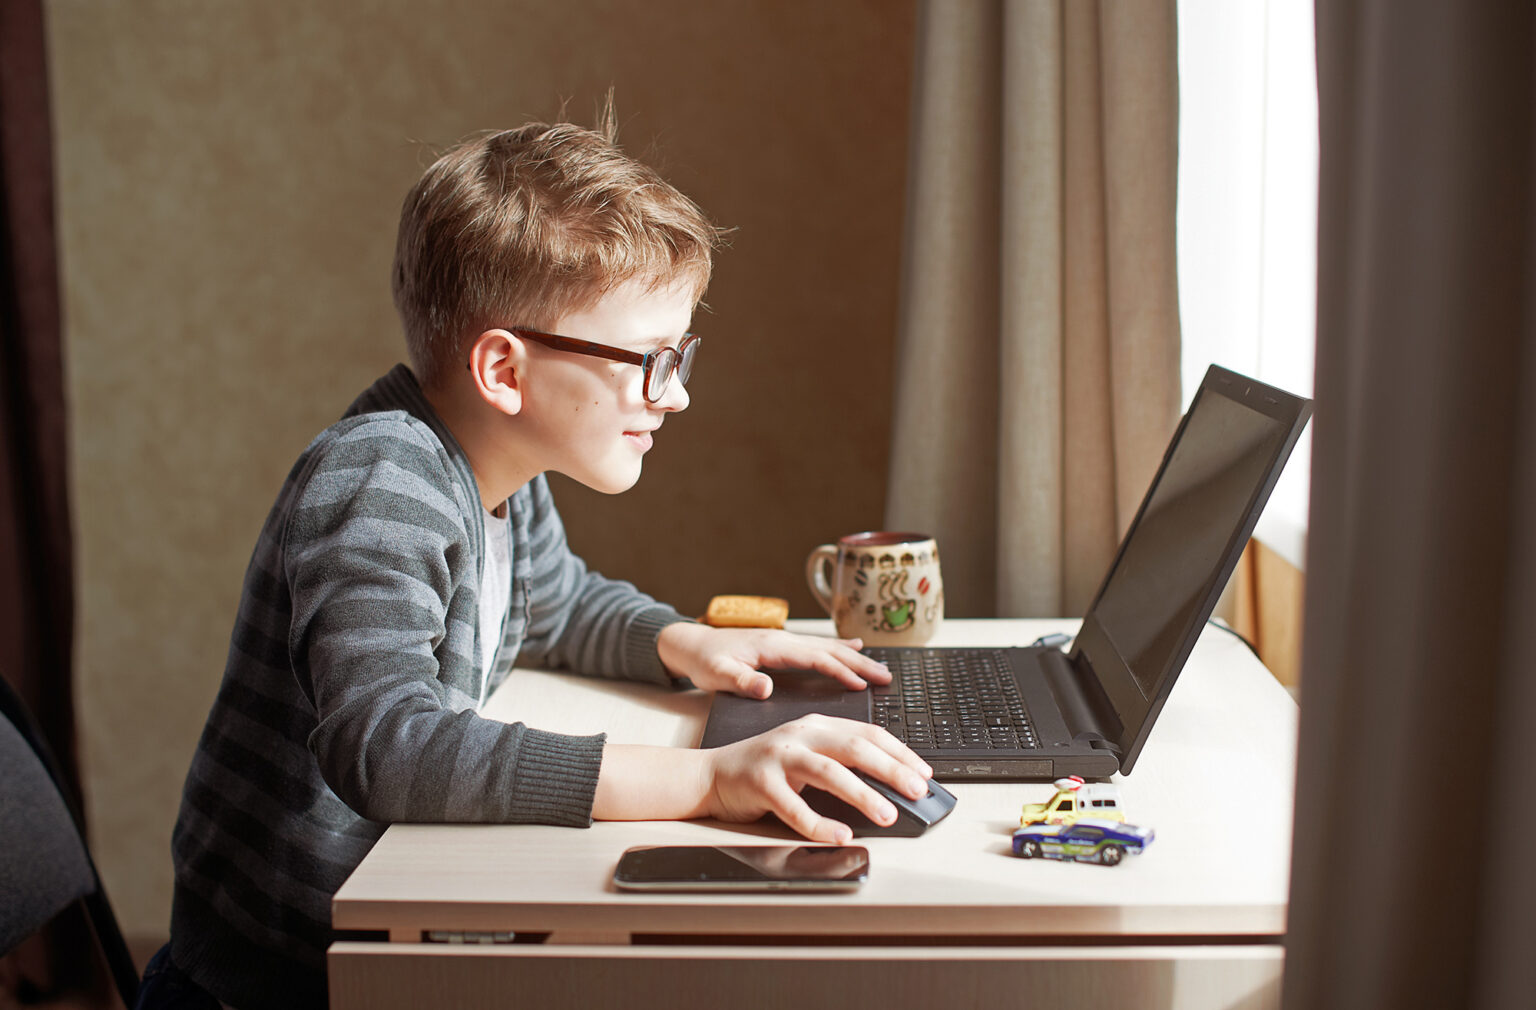 Исправь компьютер. Компьютер для детей. Ребенок за компьютером. Мальчик играет в компьютер. Компьютер для школьника.